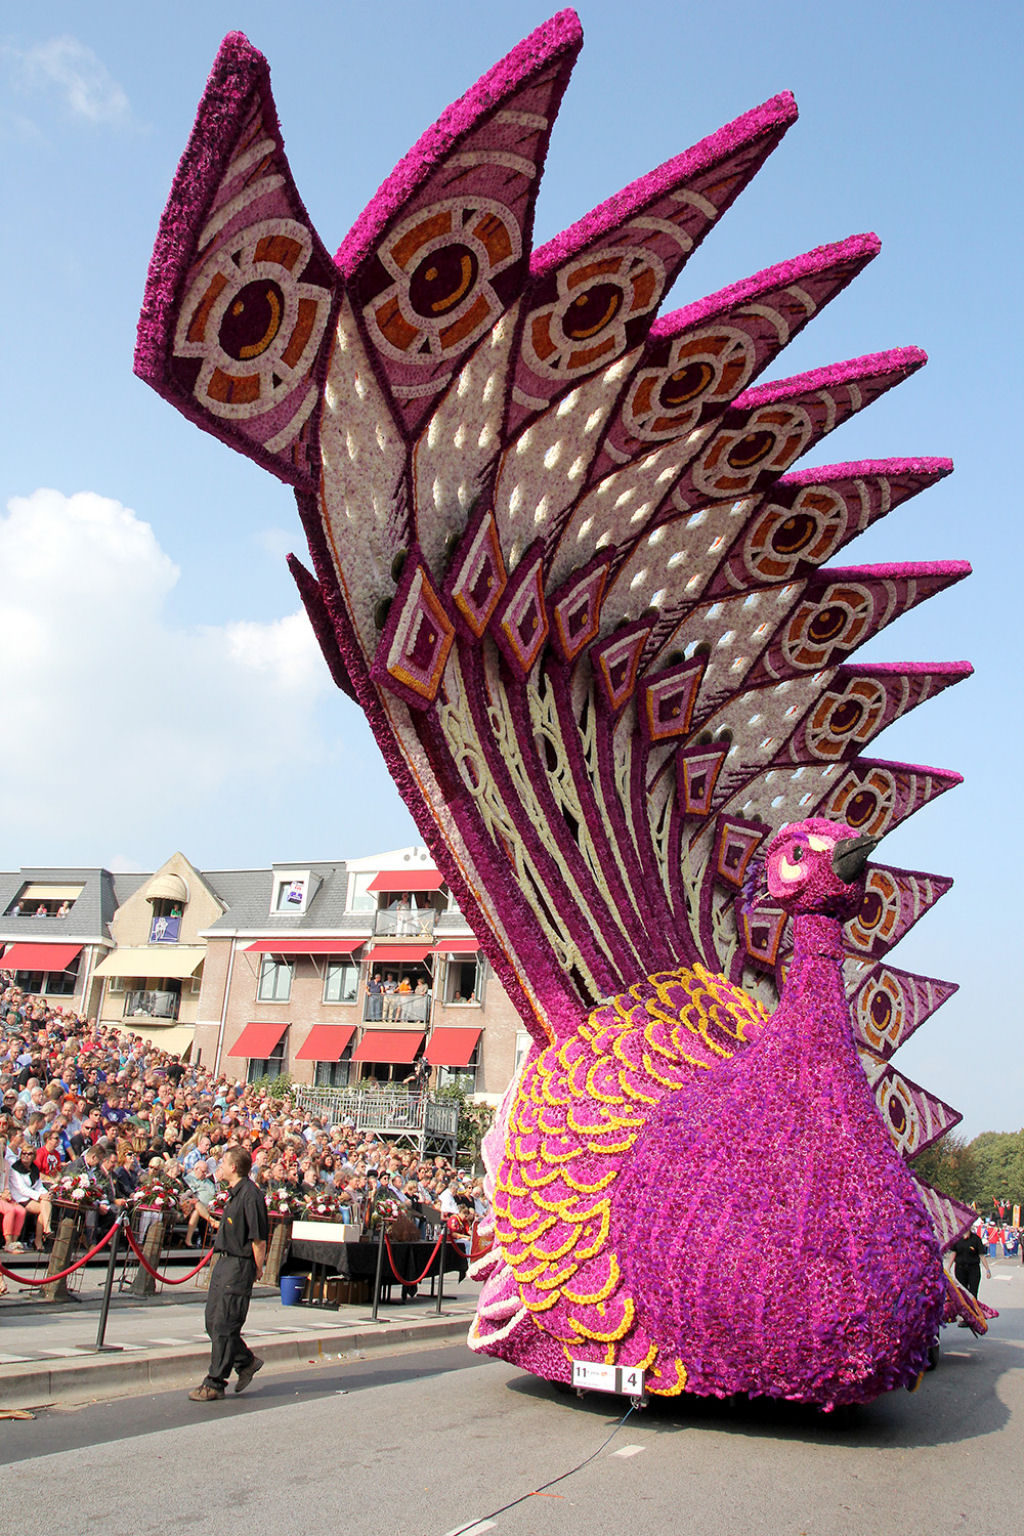 Festival Corso de Zundert 2014: a colorida festa de carros alegricos decorados com flores 07